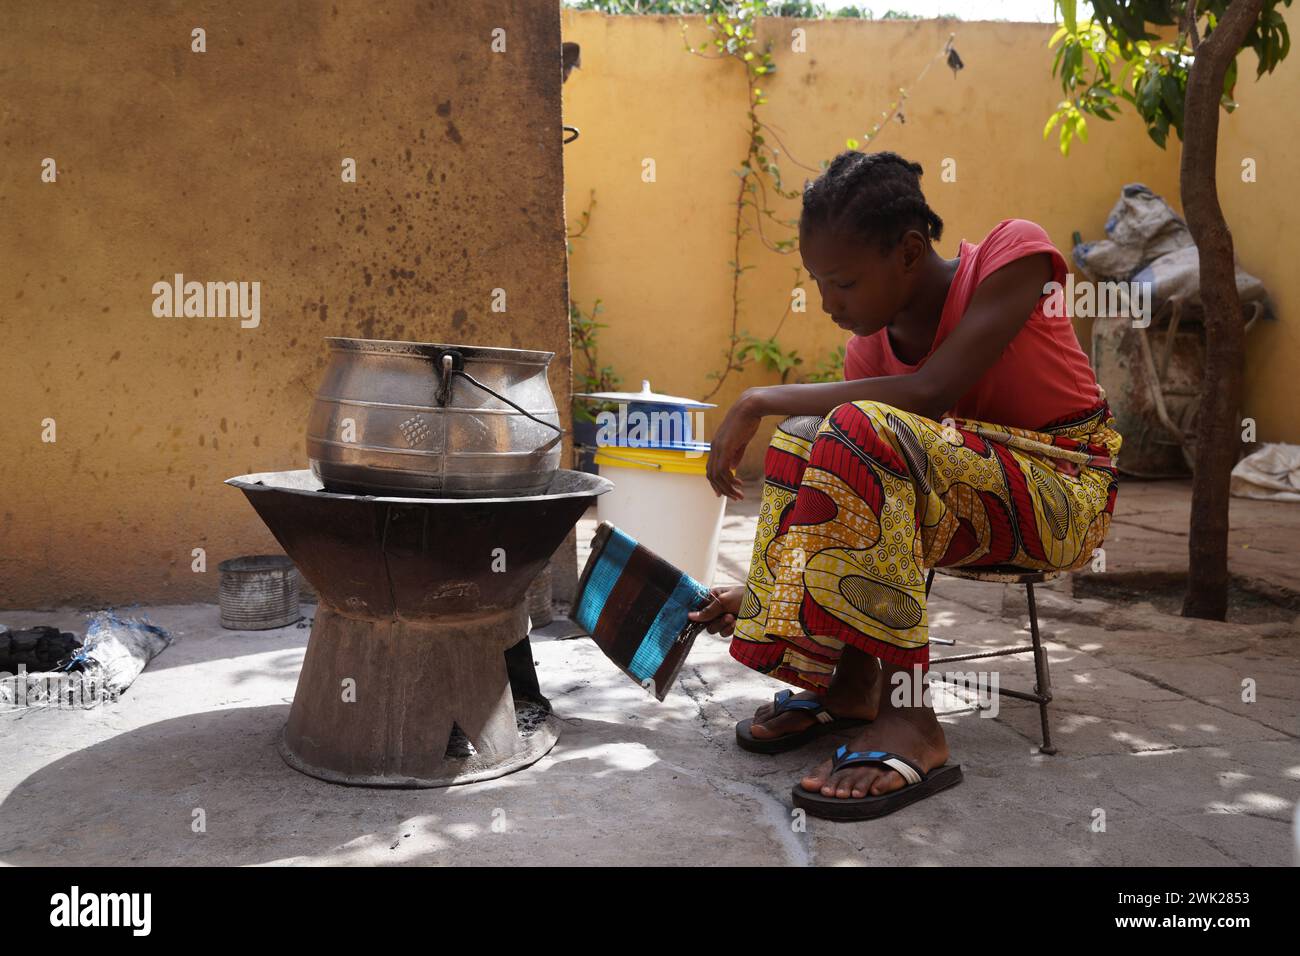 Jeune fille africaine assise devant un simple poêle à charbon de bois attisant le feu ; préparation traditionnelle des aliments Banque D'Images